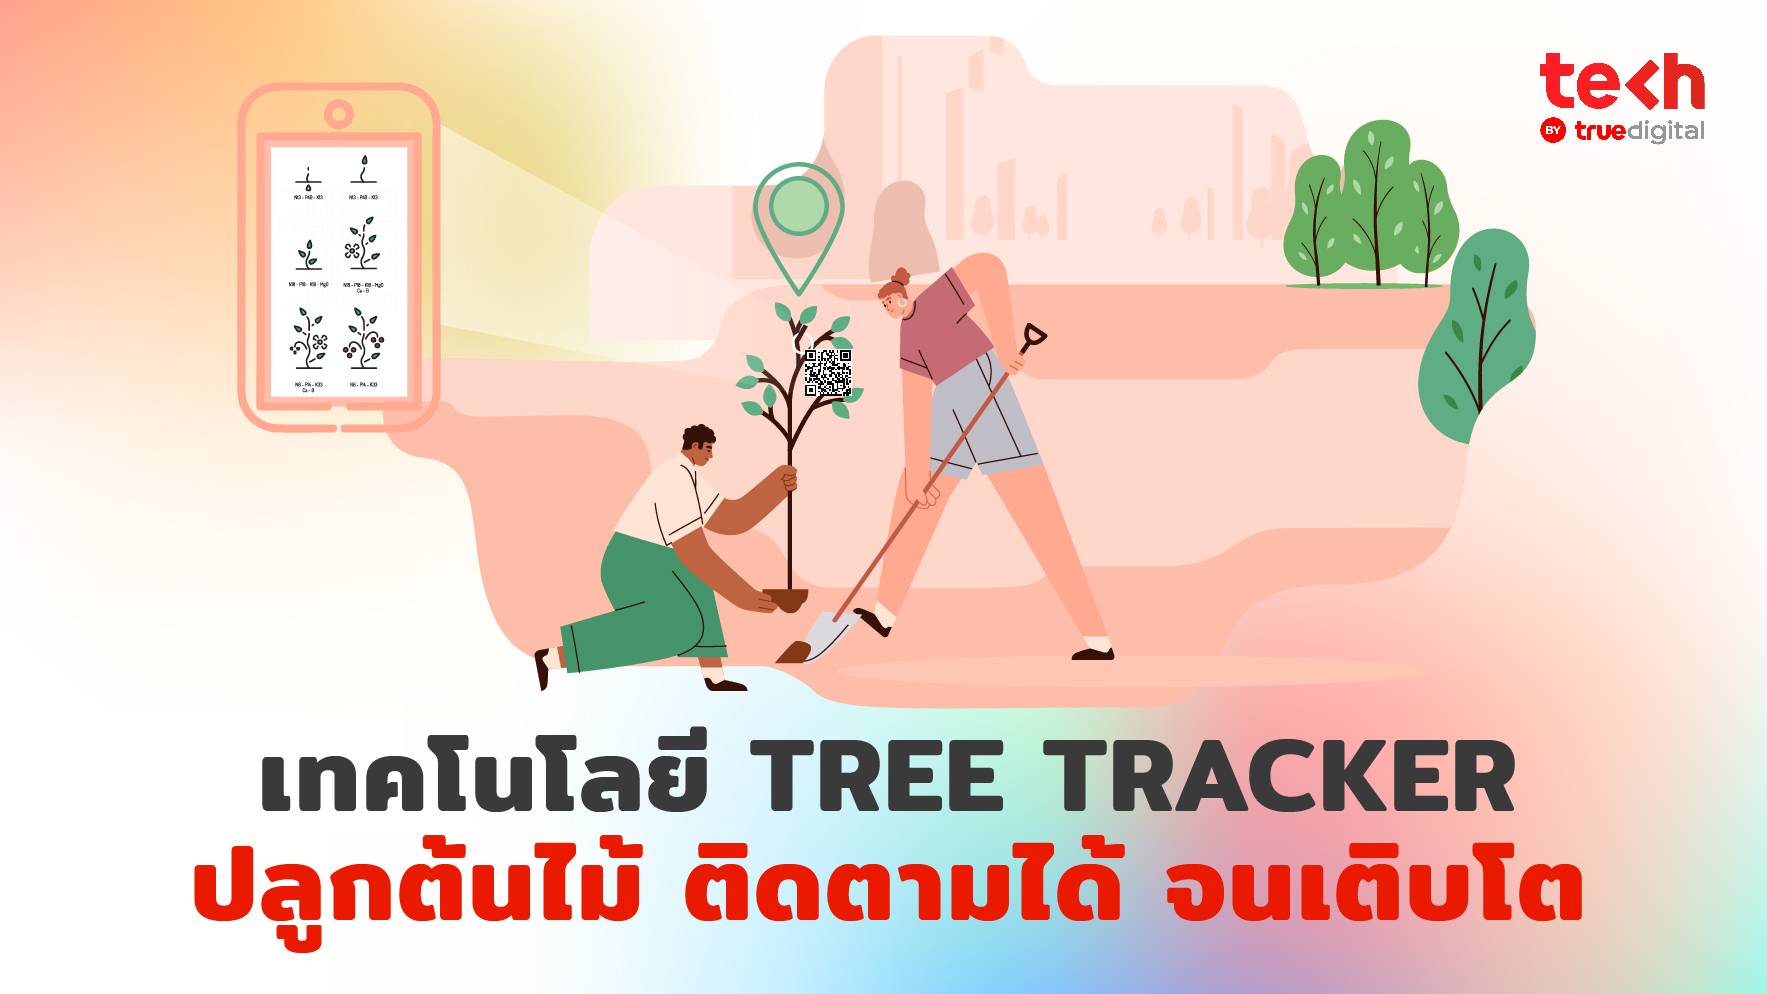 เทคโนโลยี Tree Tracker ปลูกต้นไม้ ติดตามได้ จนเติบโต